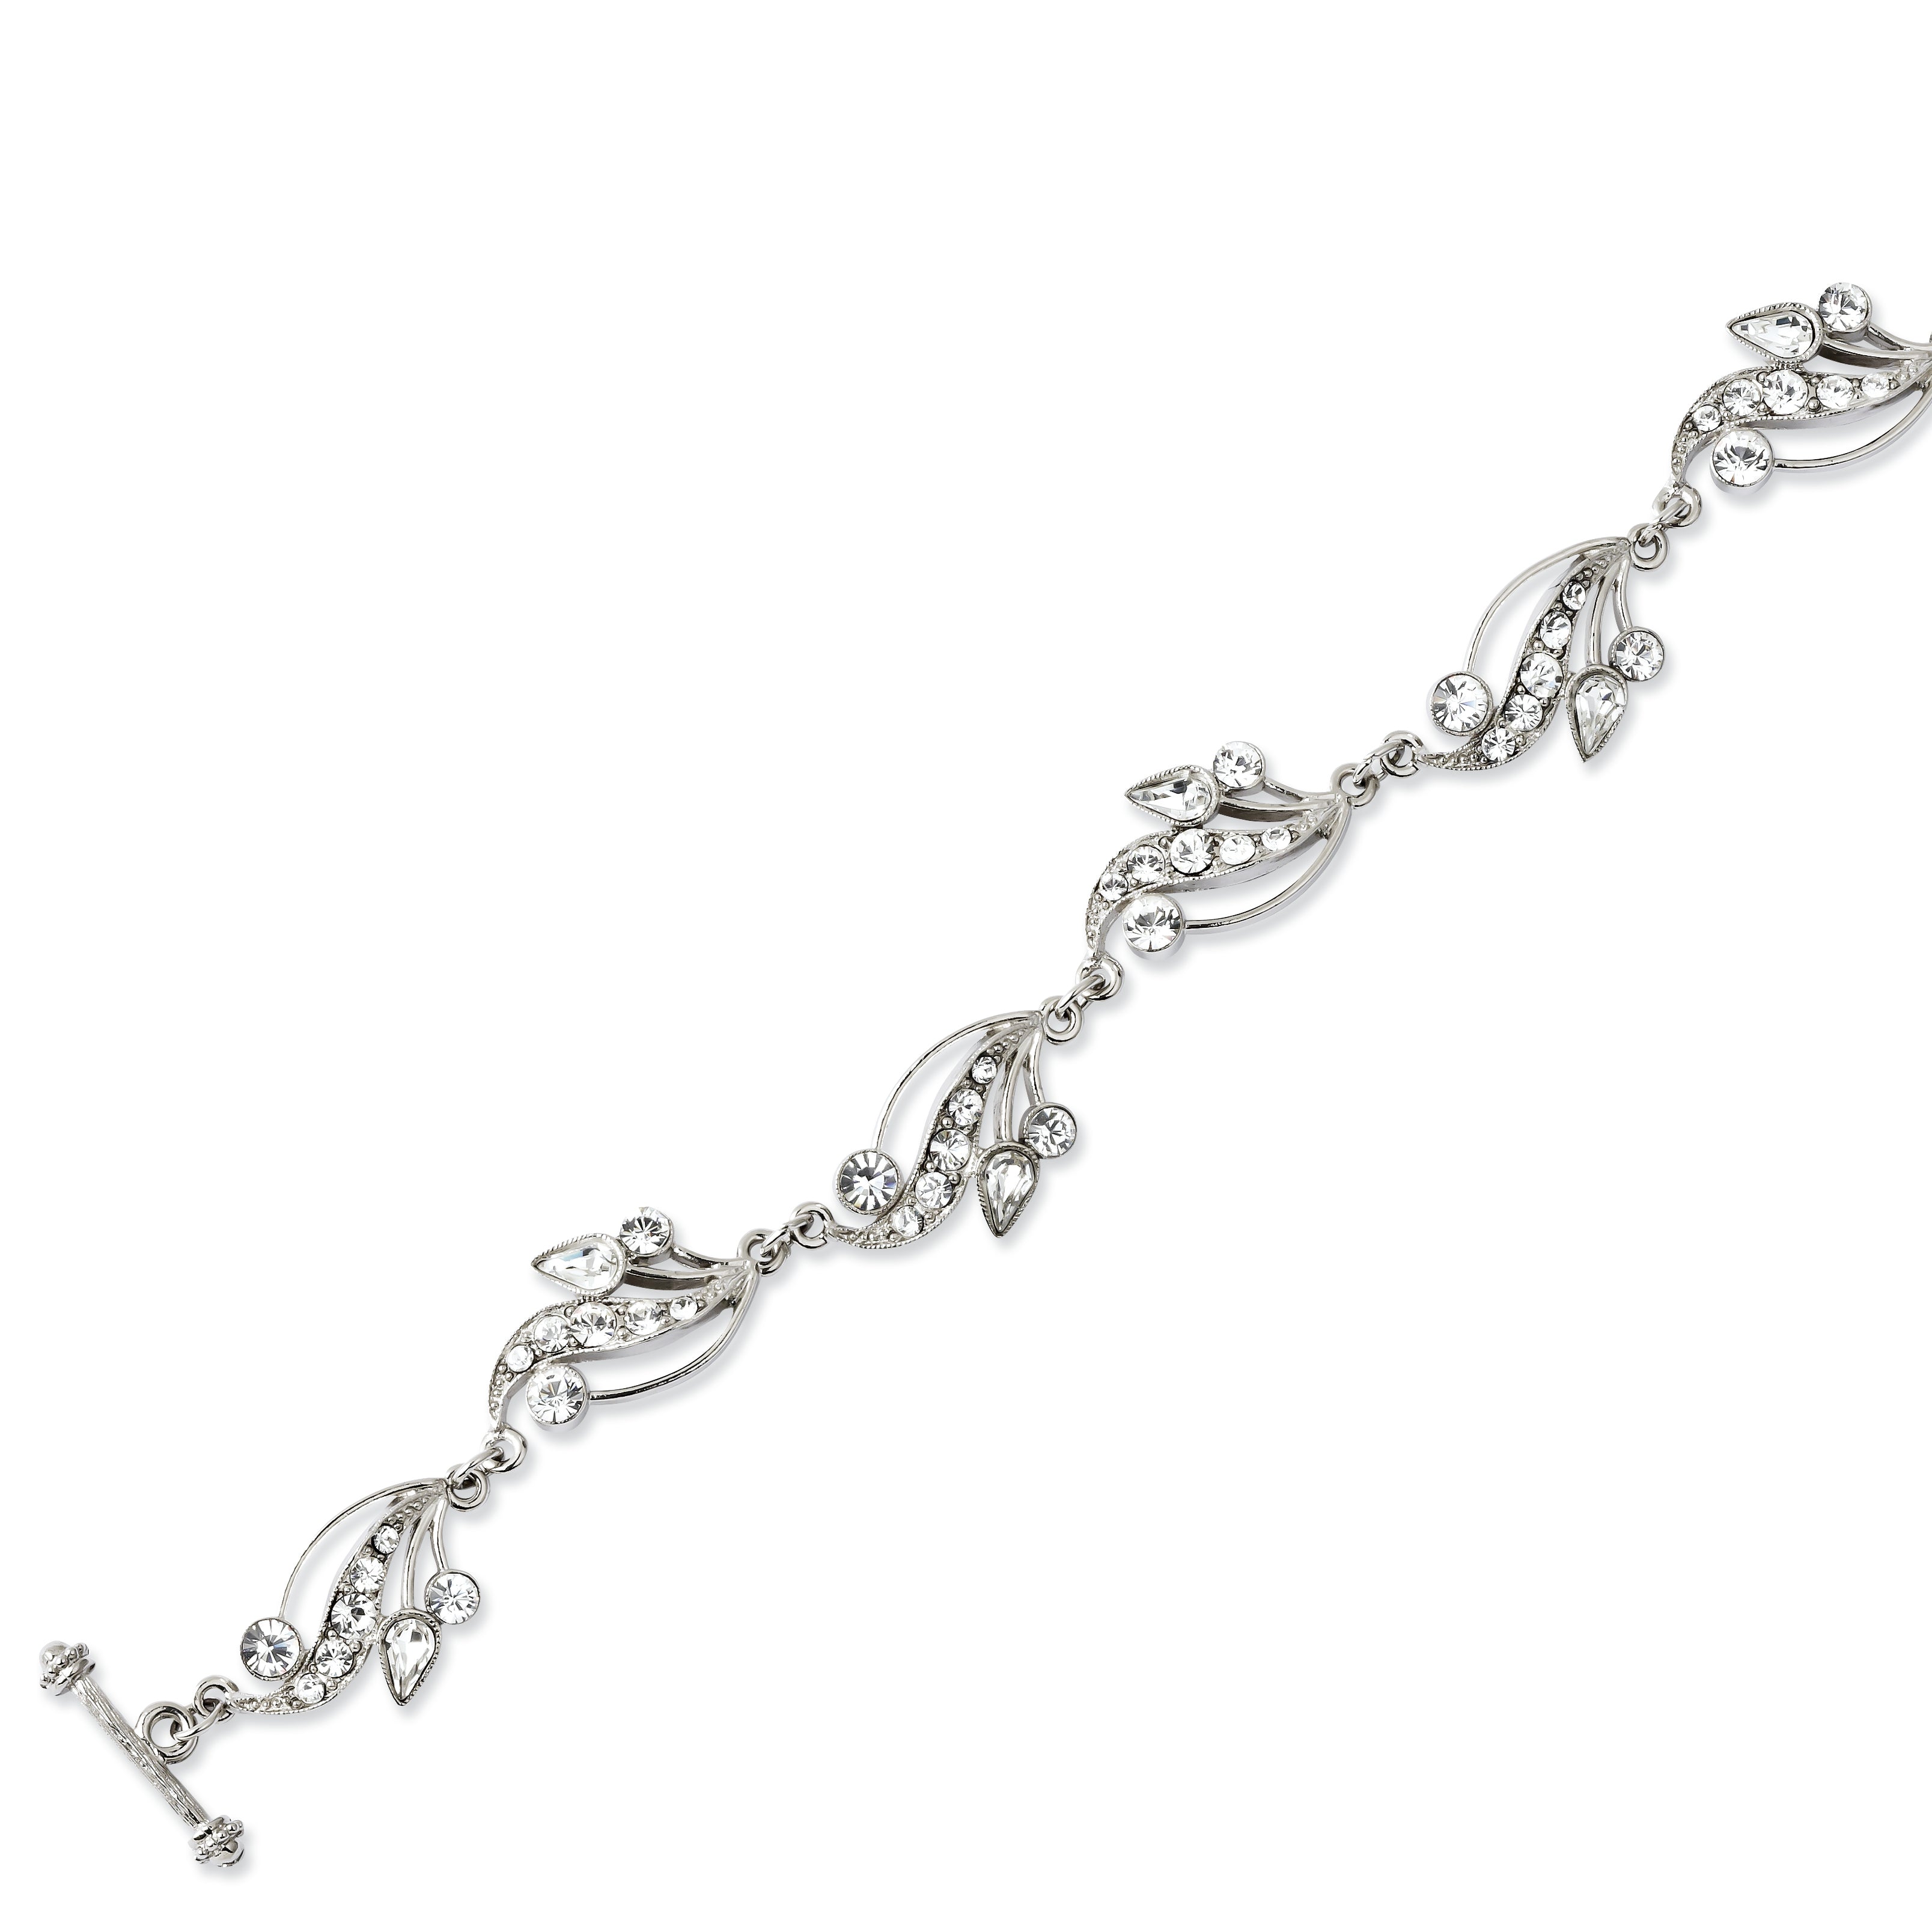 Silver-tone Swarovski Crystal 7.5in Toggle Bracelet